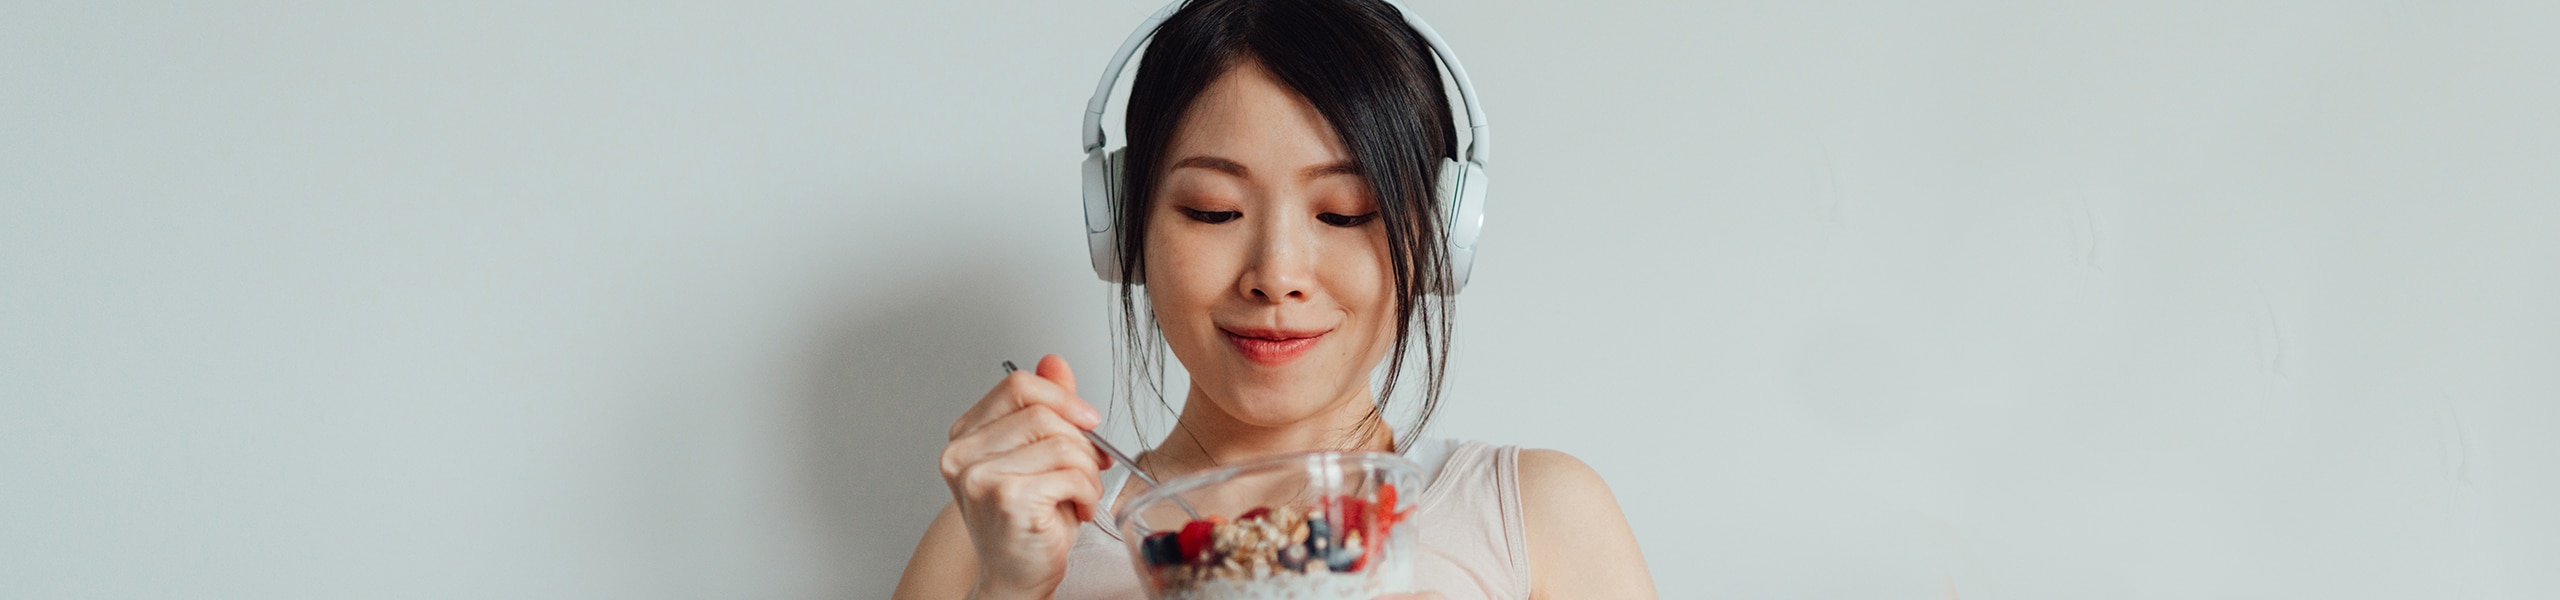 woman-in-headphones